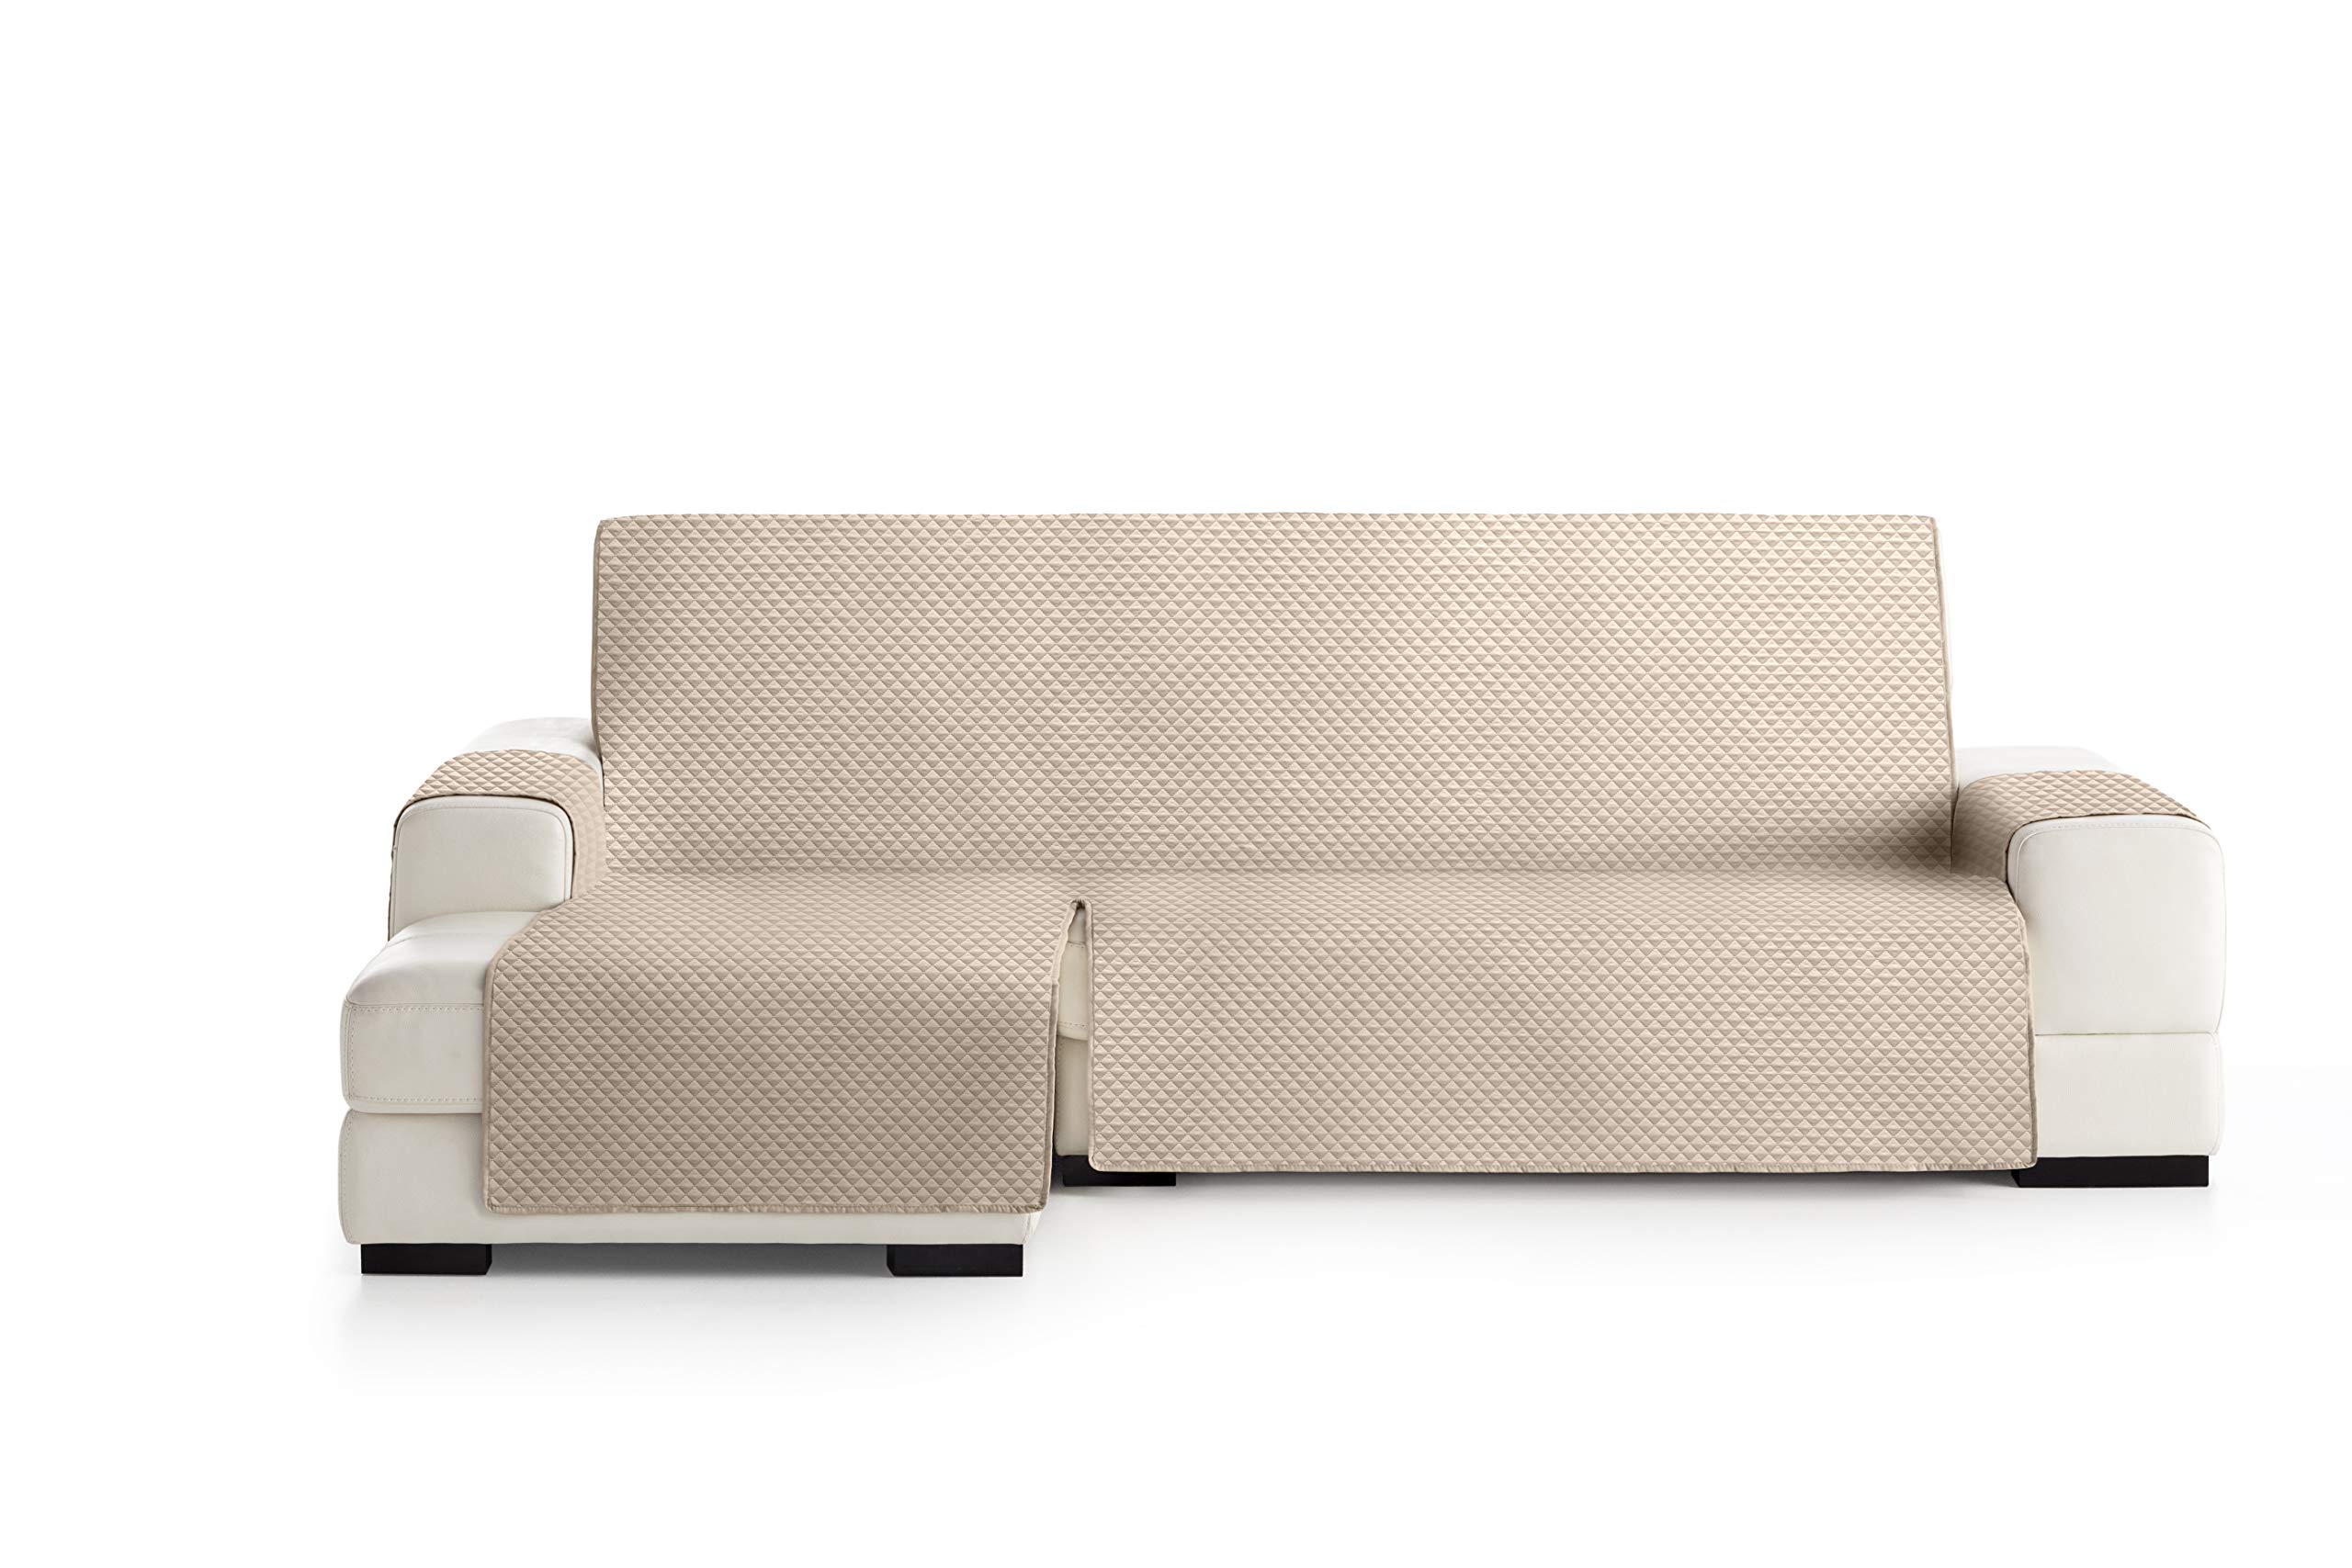 Eysa Oslo Protect wasserdichte und atmungsaktive Sofa überwurf, 100% Polyester, beige, 290 cm